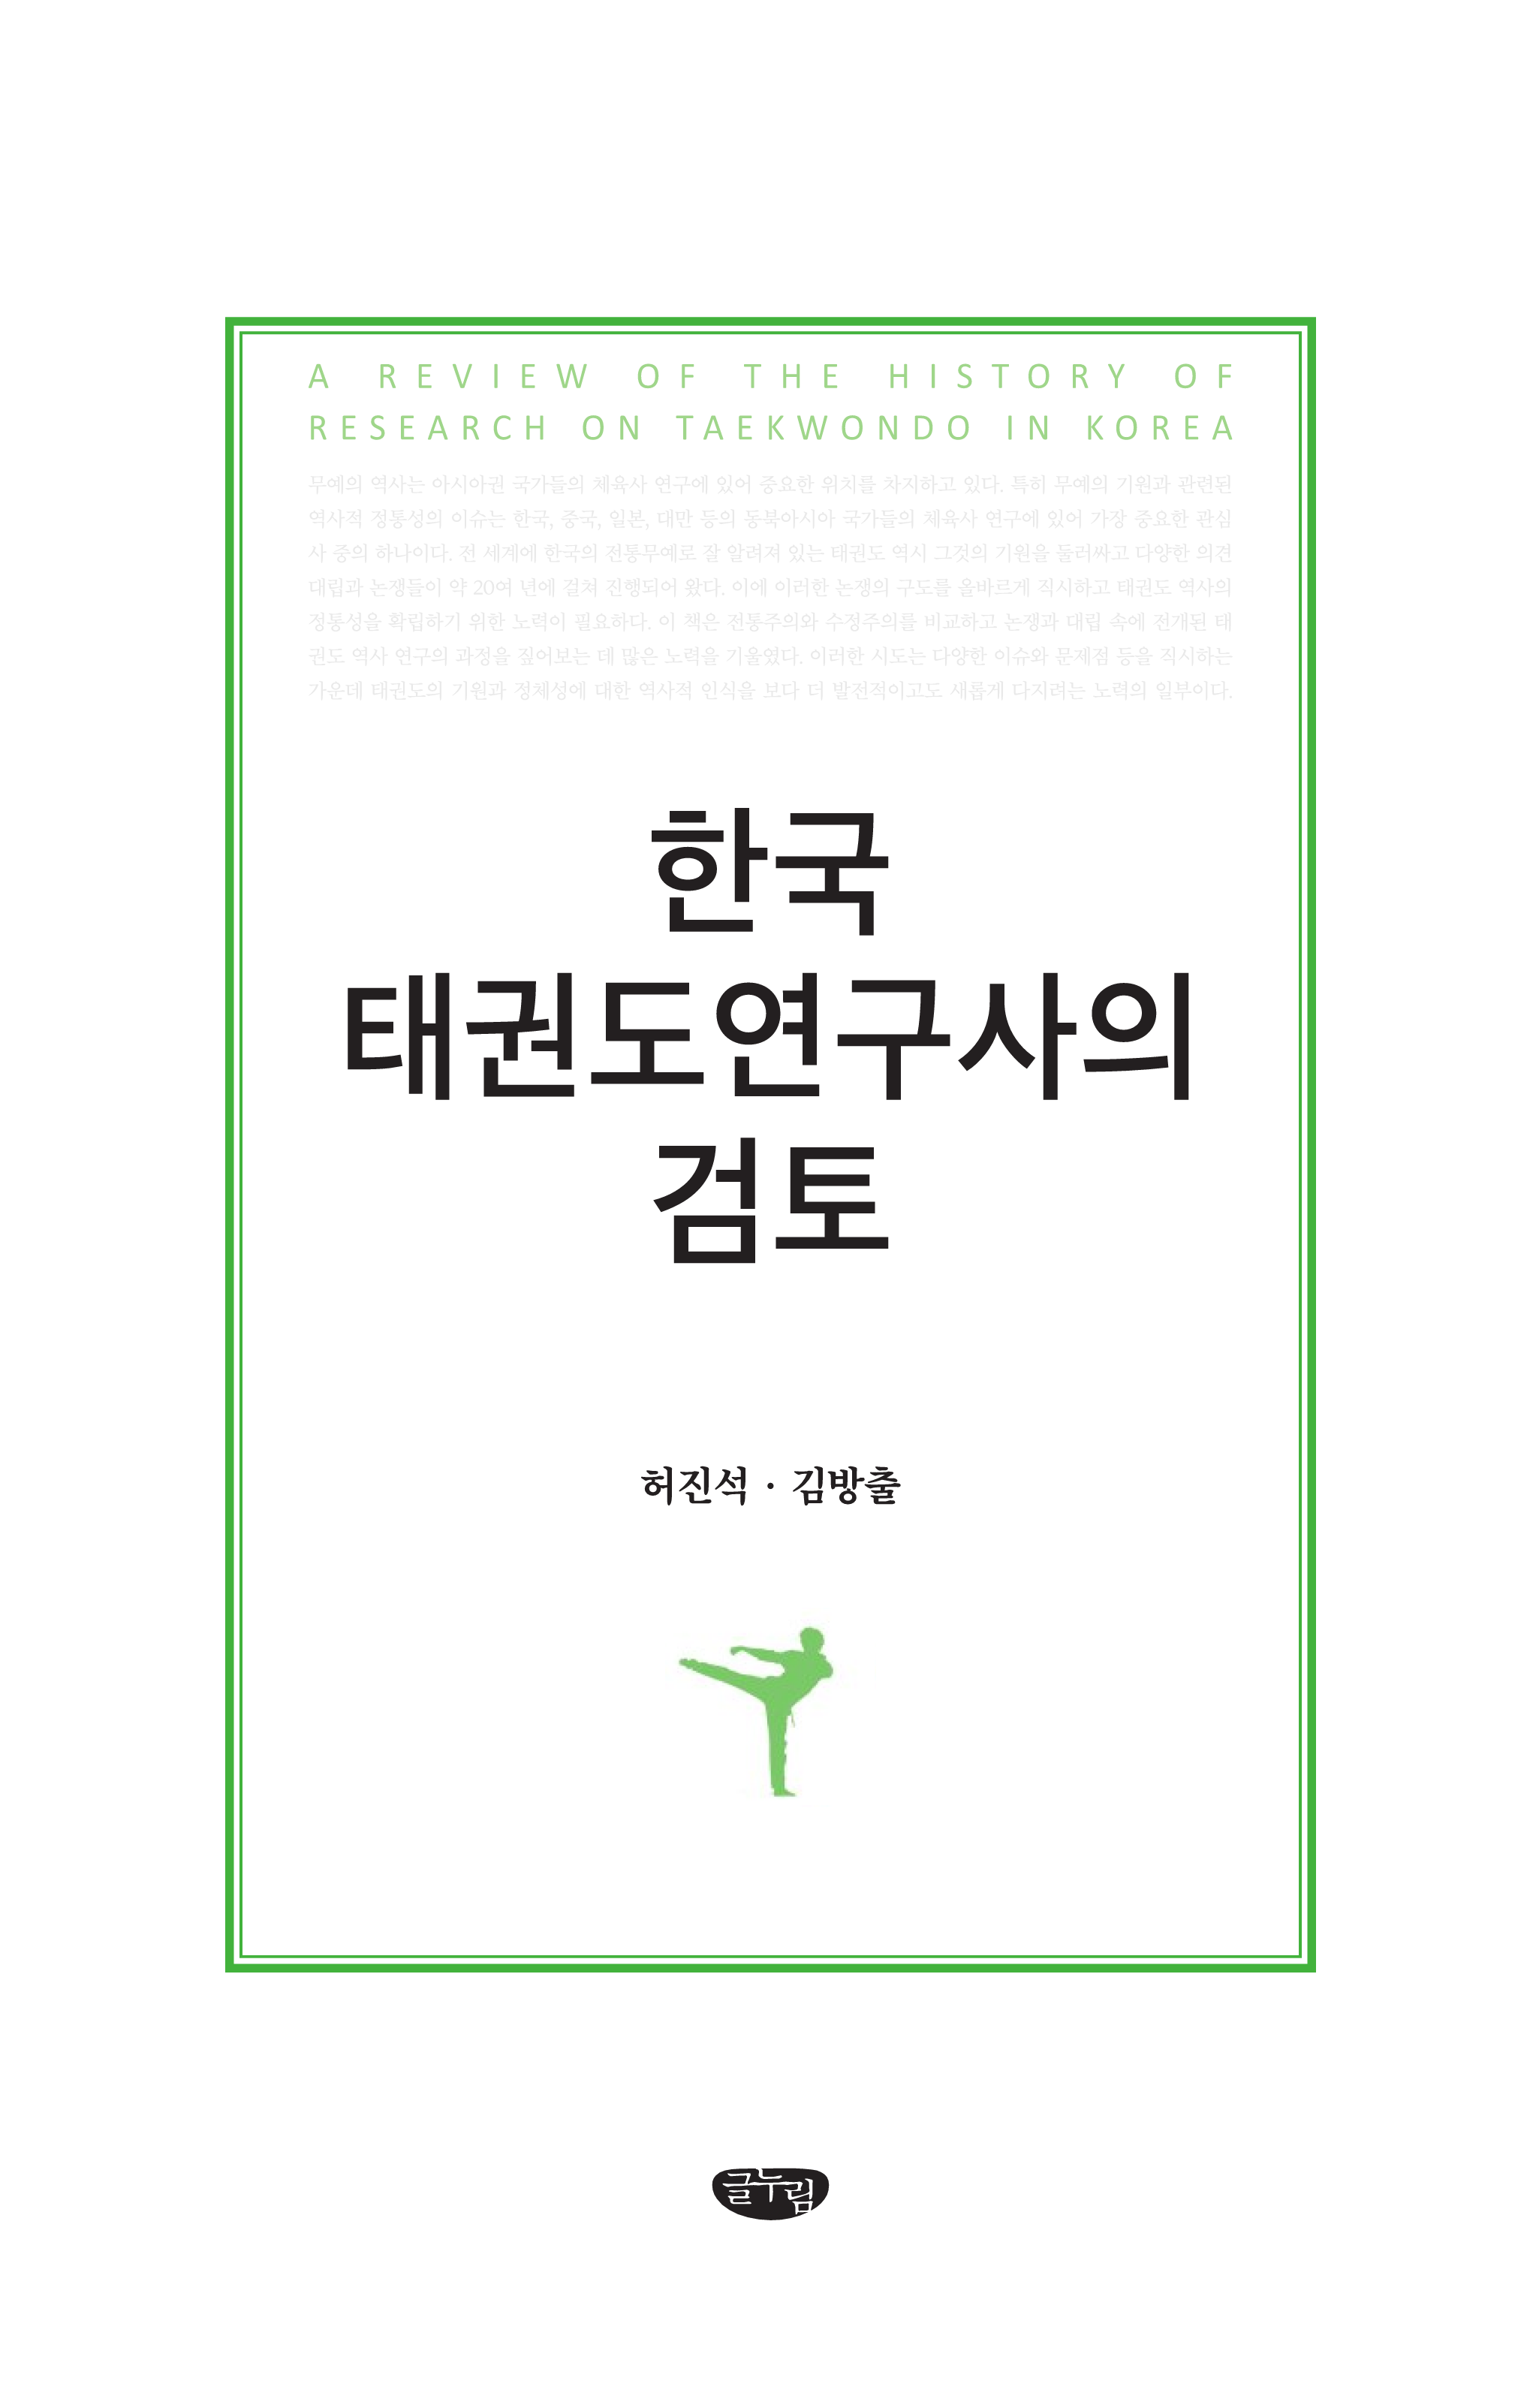 한국 태권도연구사의 검토